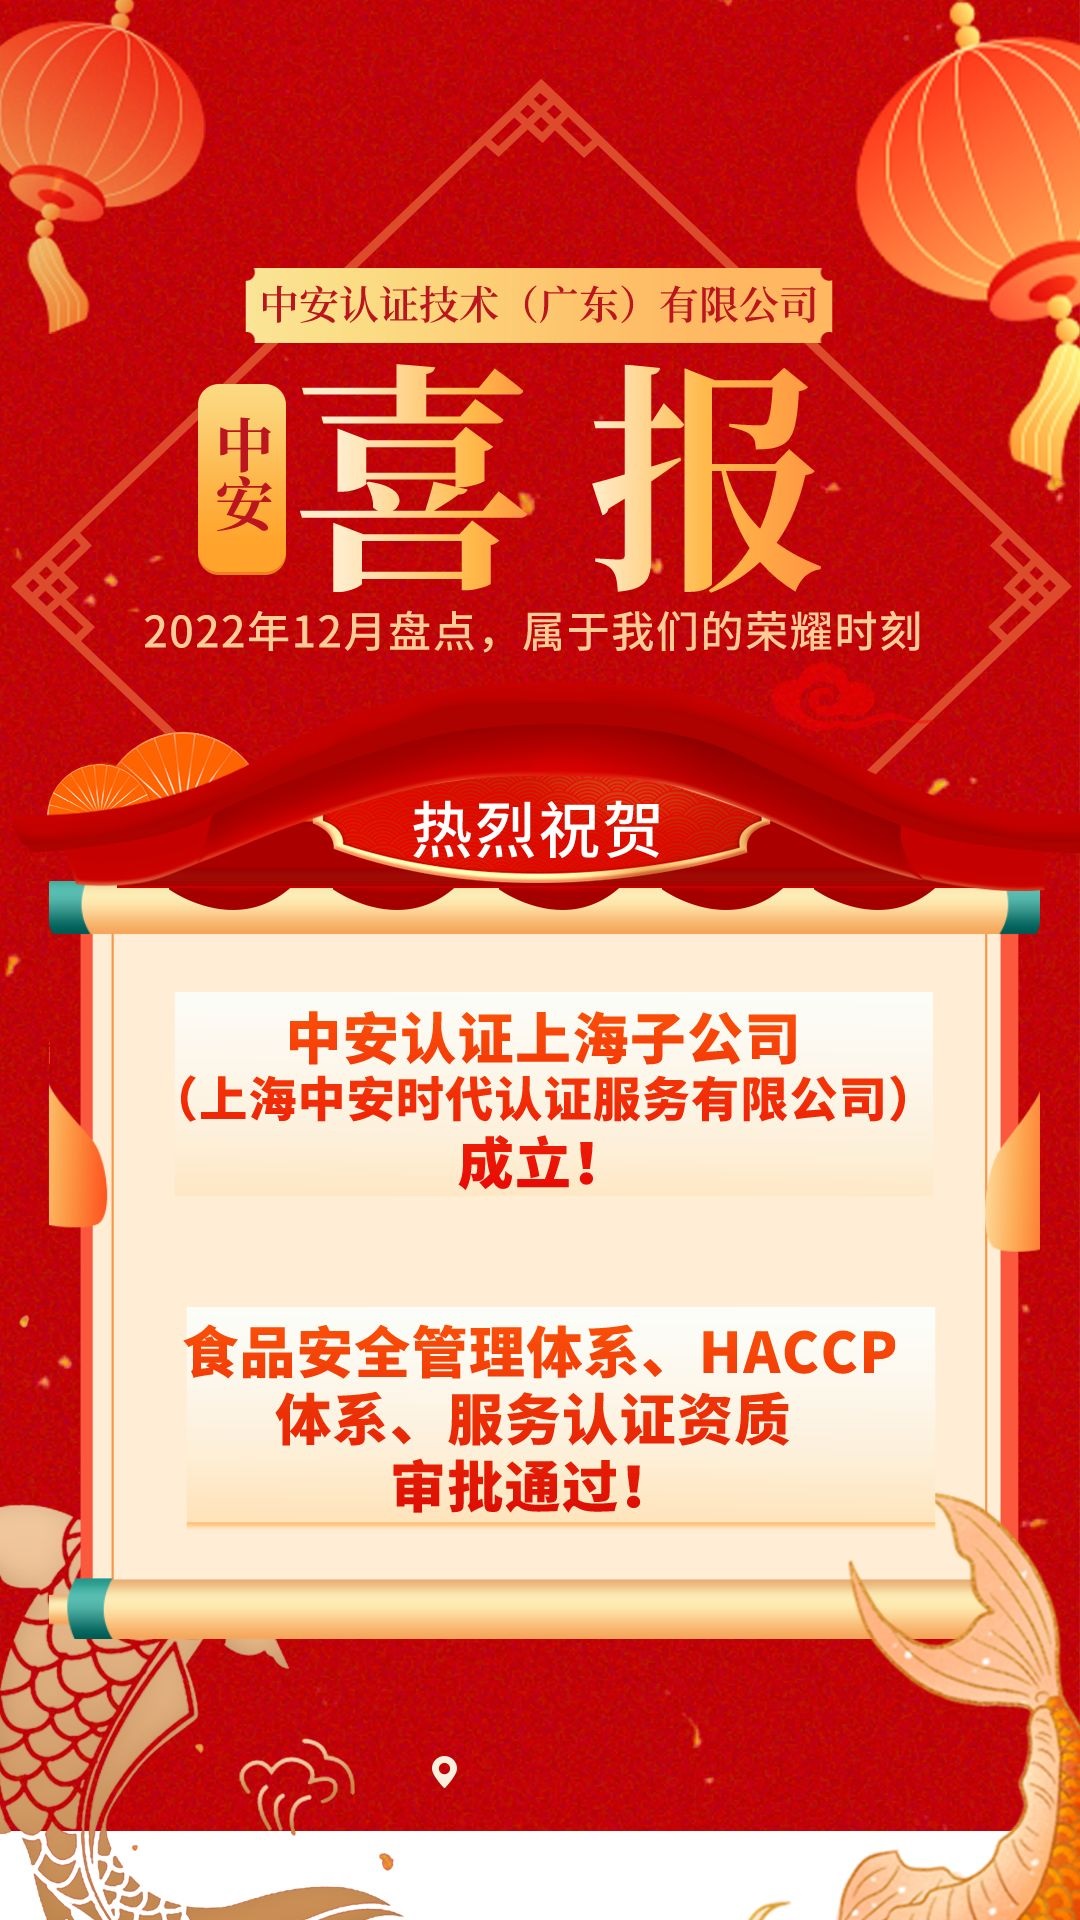 中国风手绘喜报战报保险荣誉推广宣传海报__2023-01-12 09_18_47.JPG